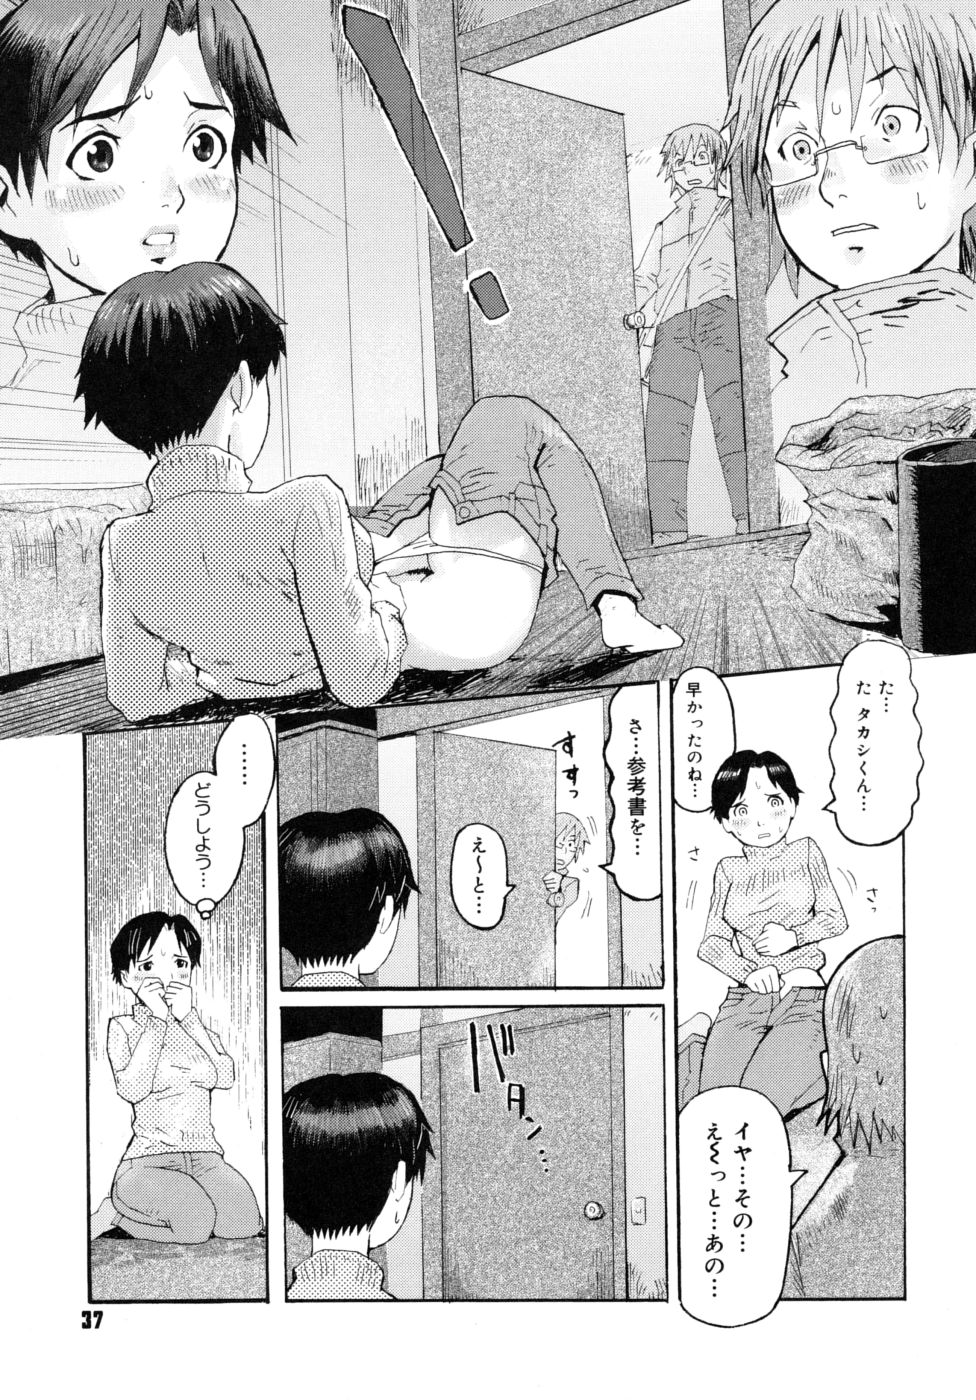 [Kuroiwa Menou] Milk Crown page 39 full